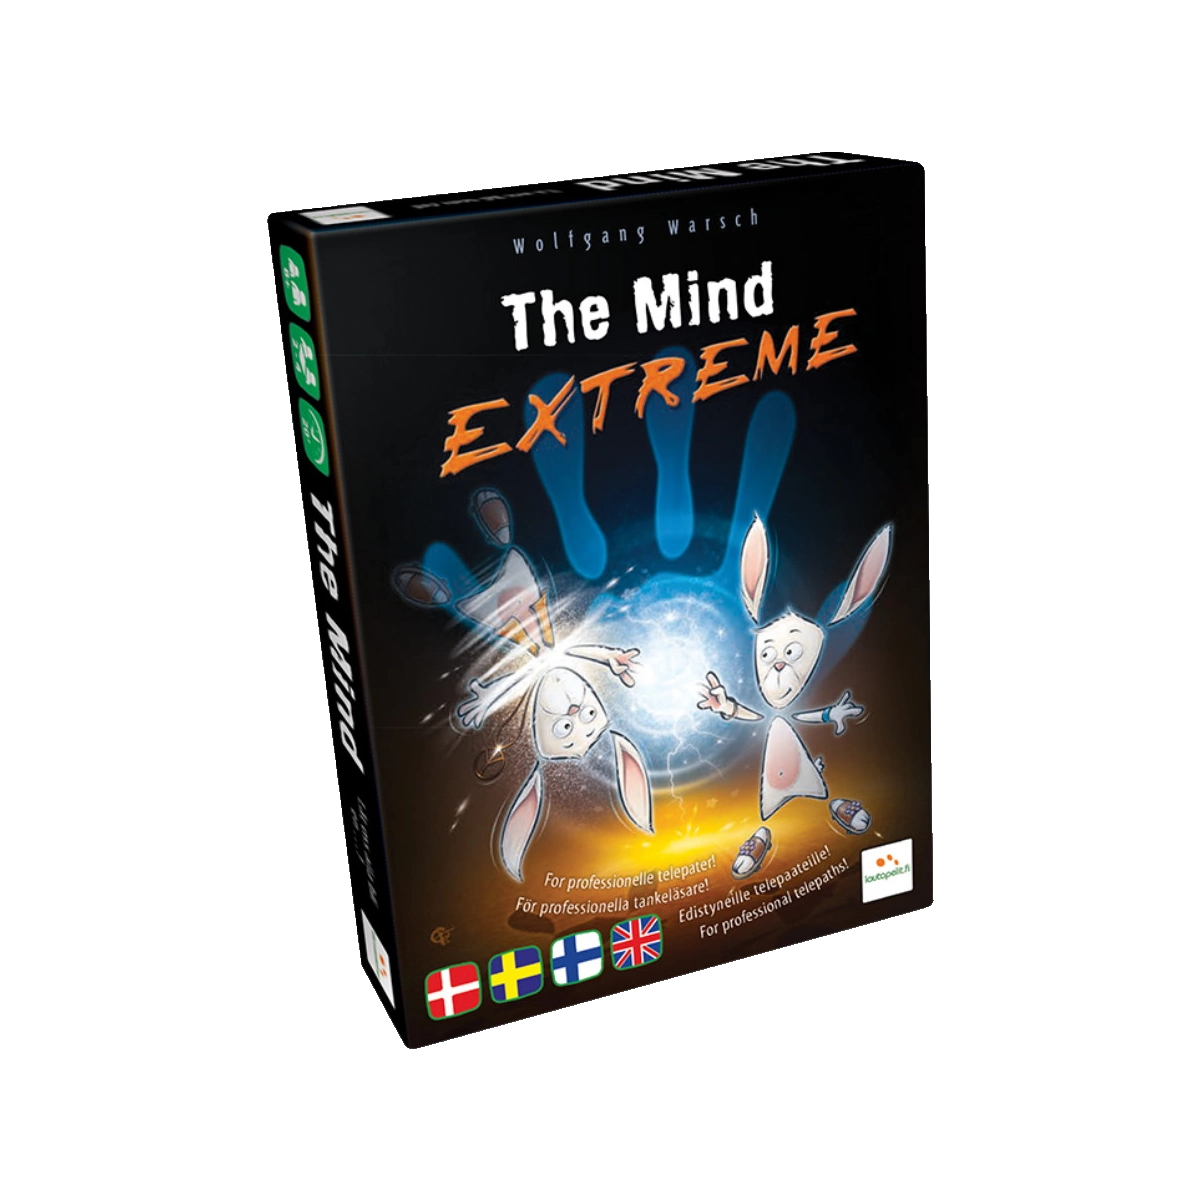 The Mind: Extreme (dansk)